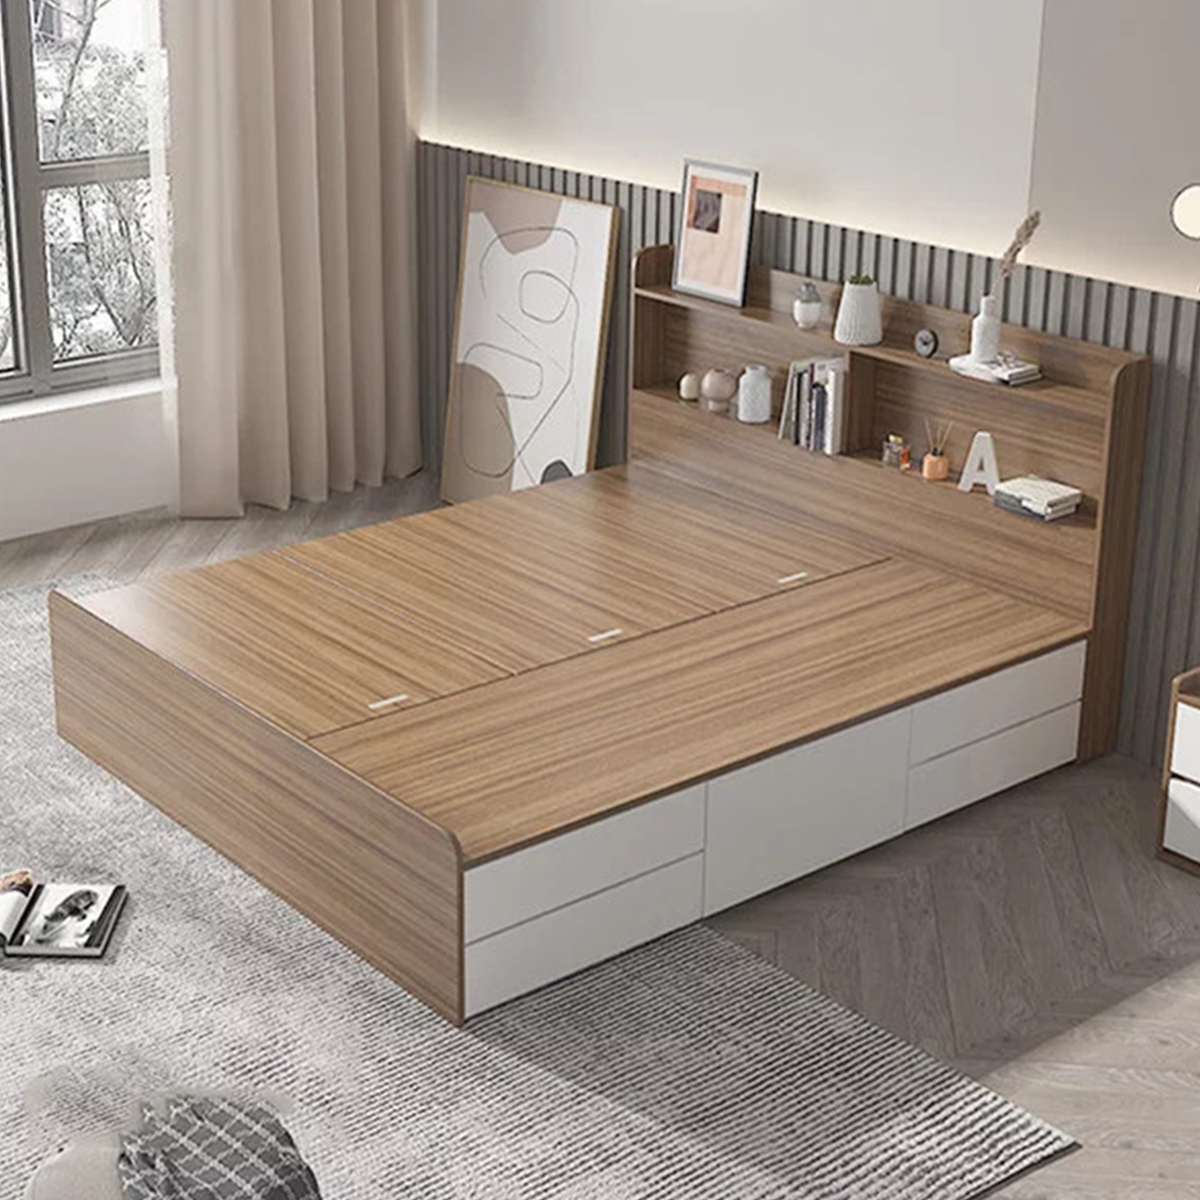 Giường hộp đơn gỗ công nghiệp với thiết kế đơn giản 